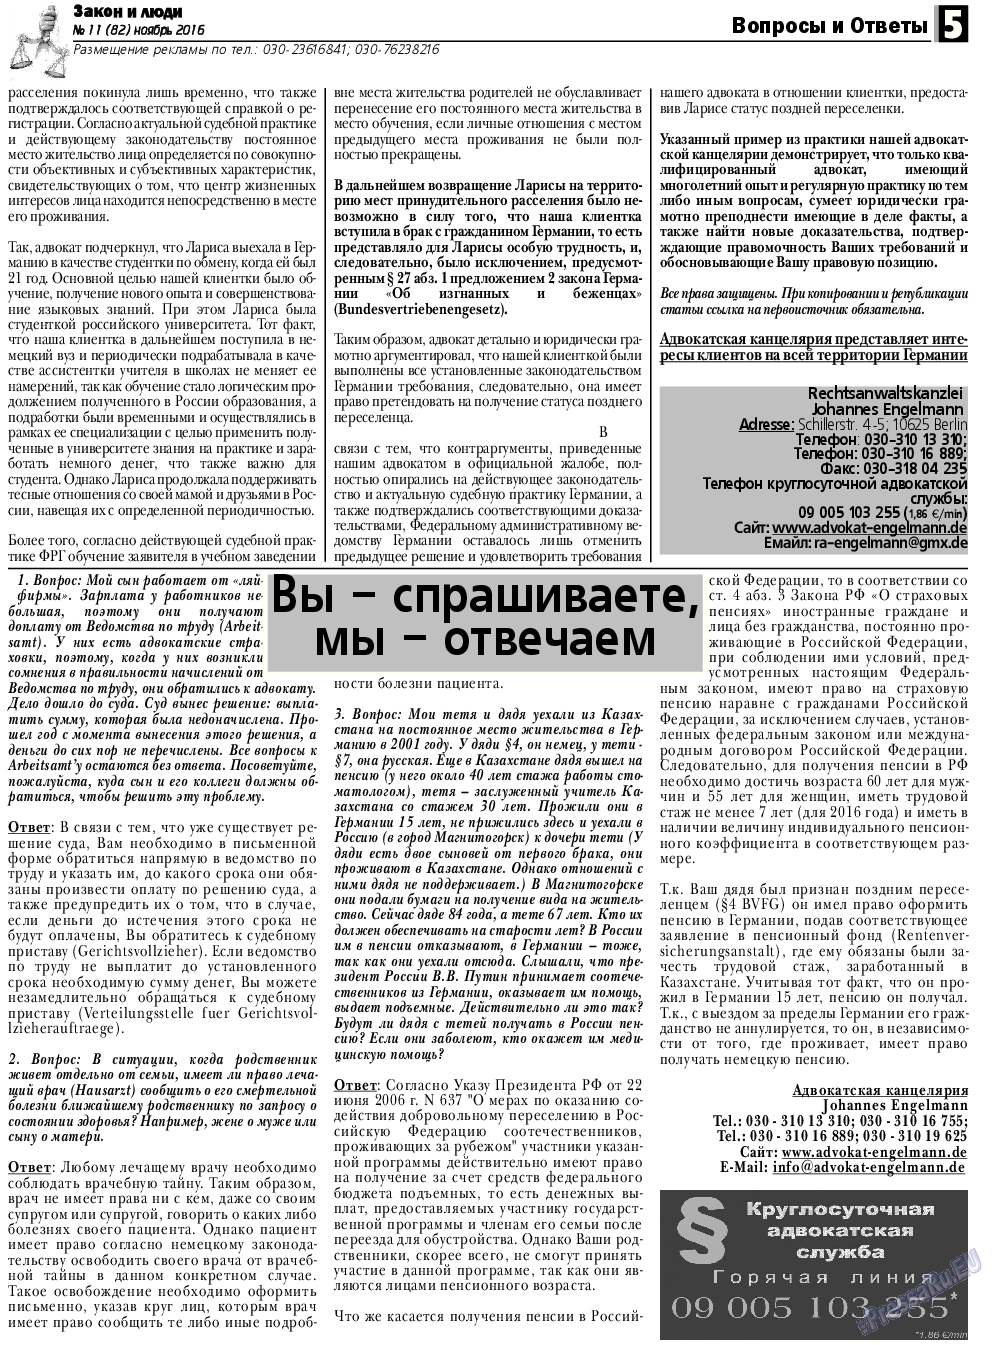 Закон и люди, газета. 2016 №11 стр.5